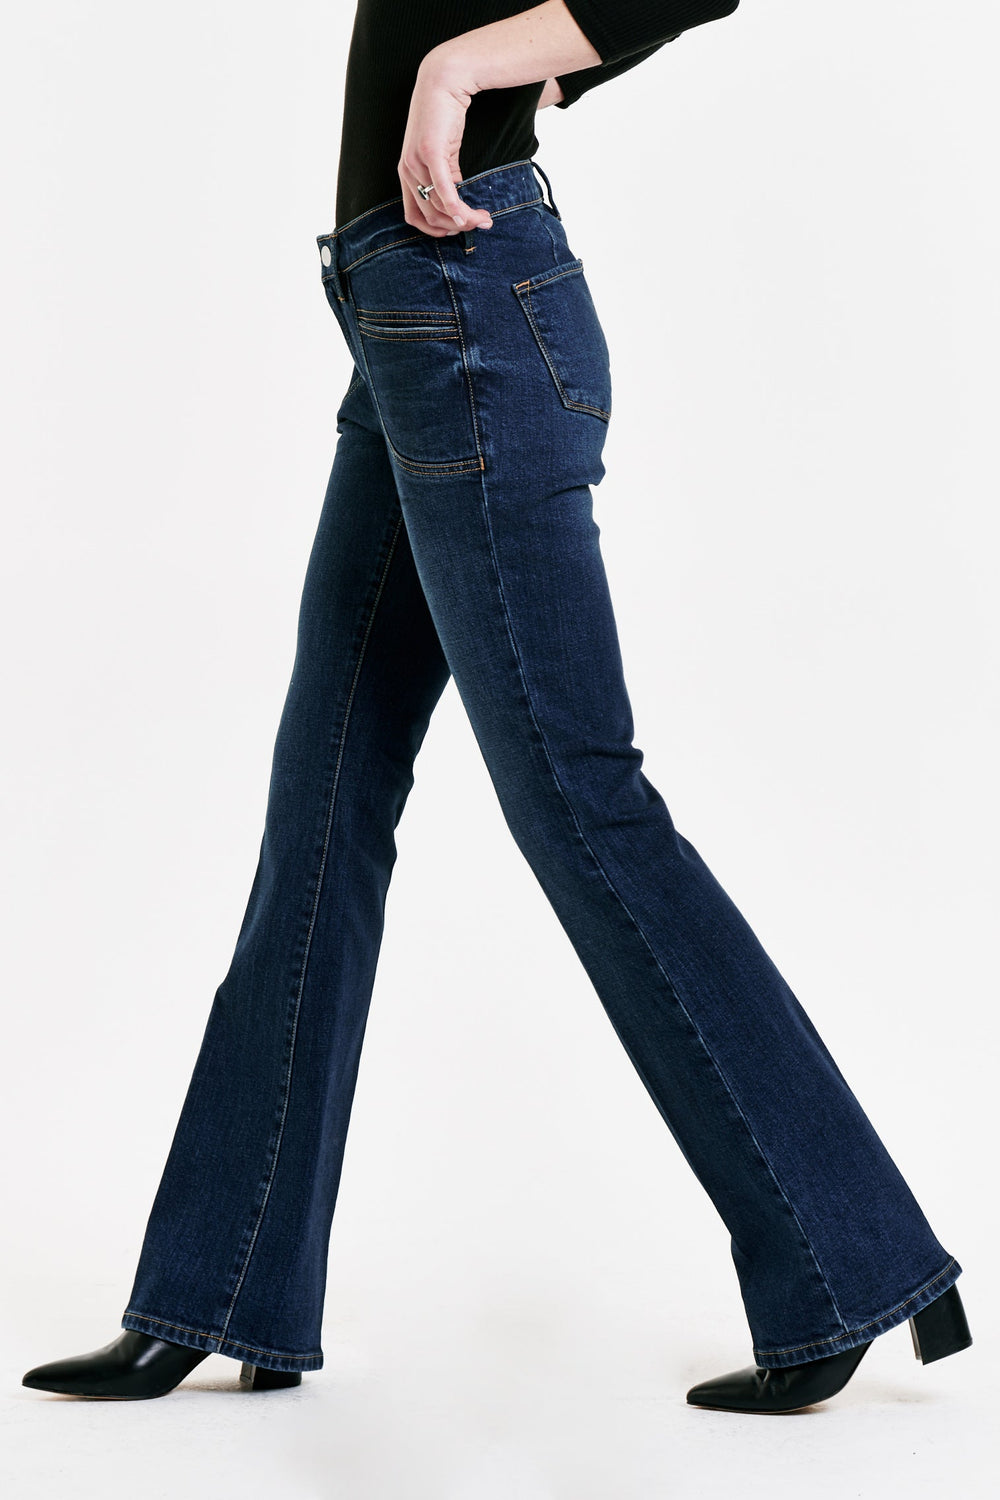 image of a female model wearing a JAXTYN HIGH RISE BOOTCUT JEANS GRAYBAY DEAR JOHN DENIM 